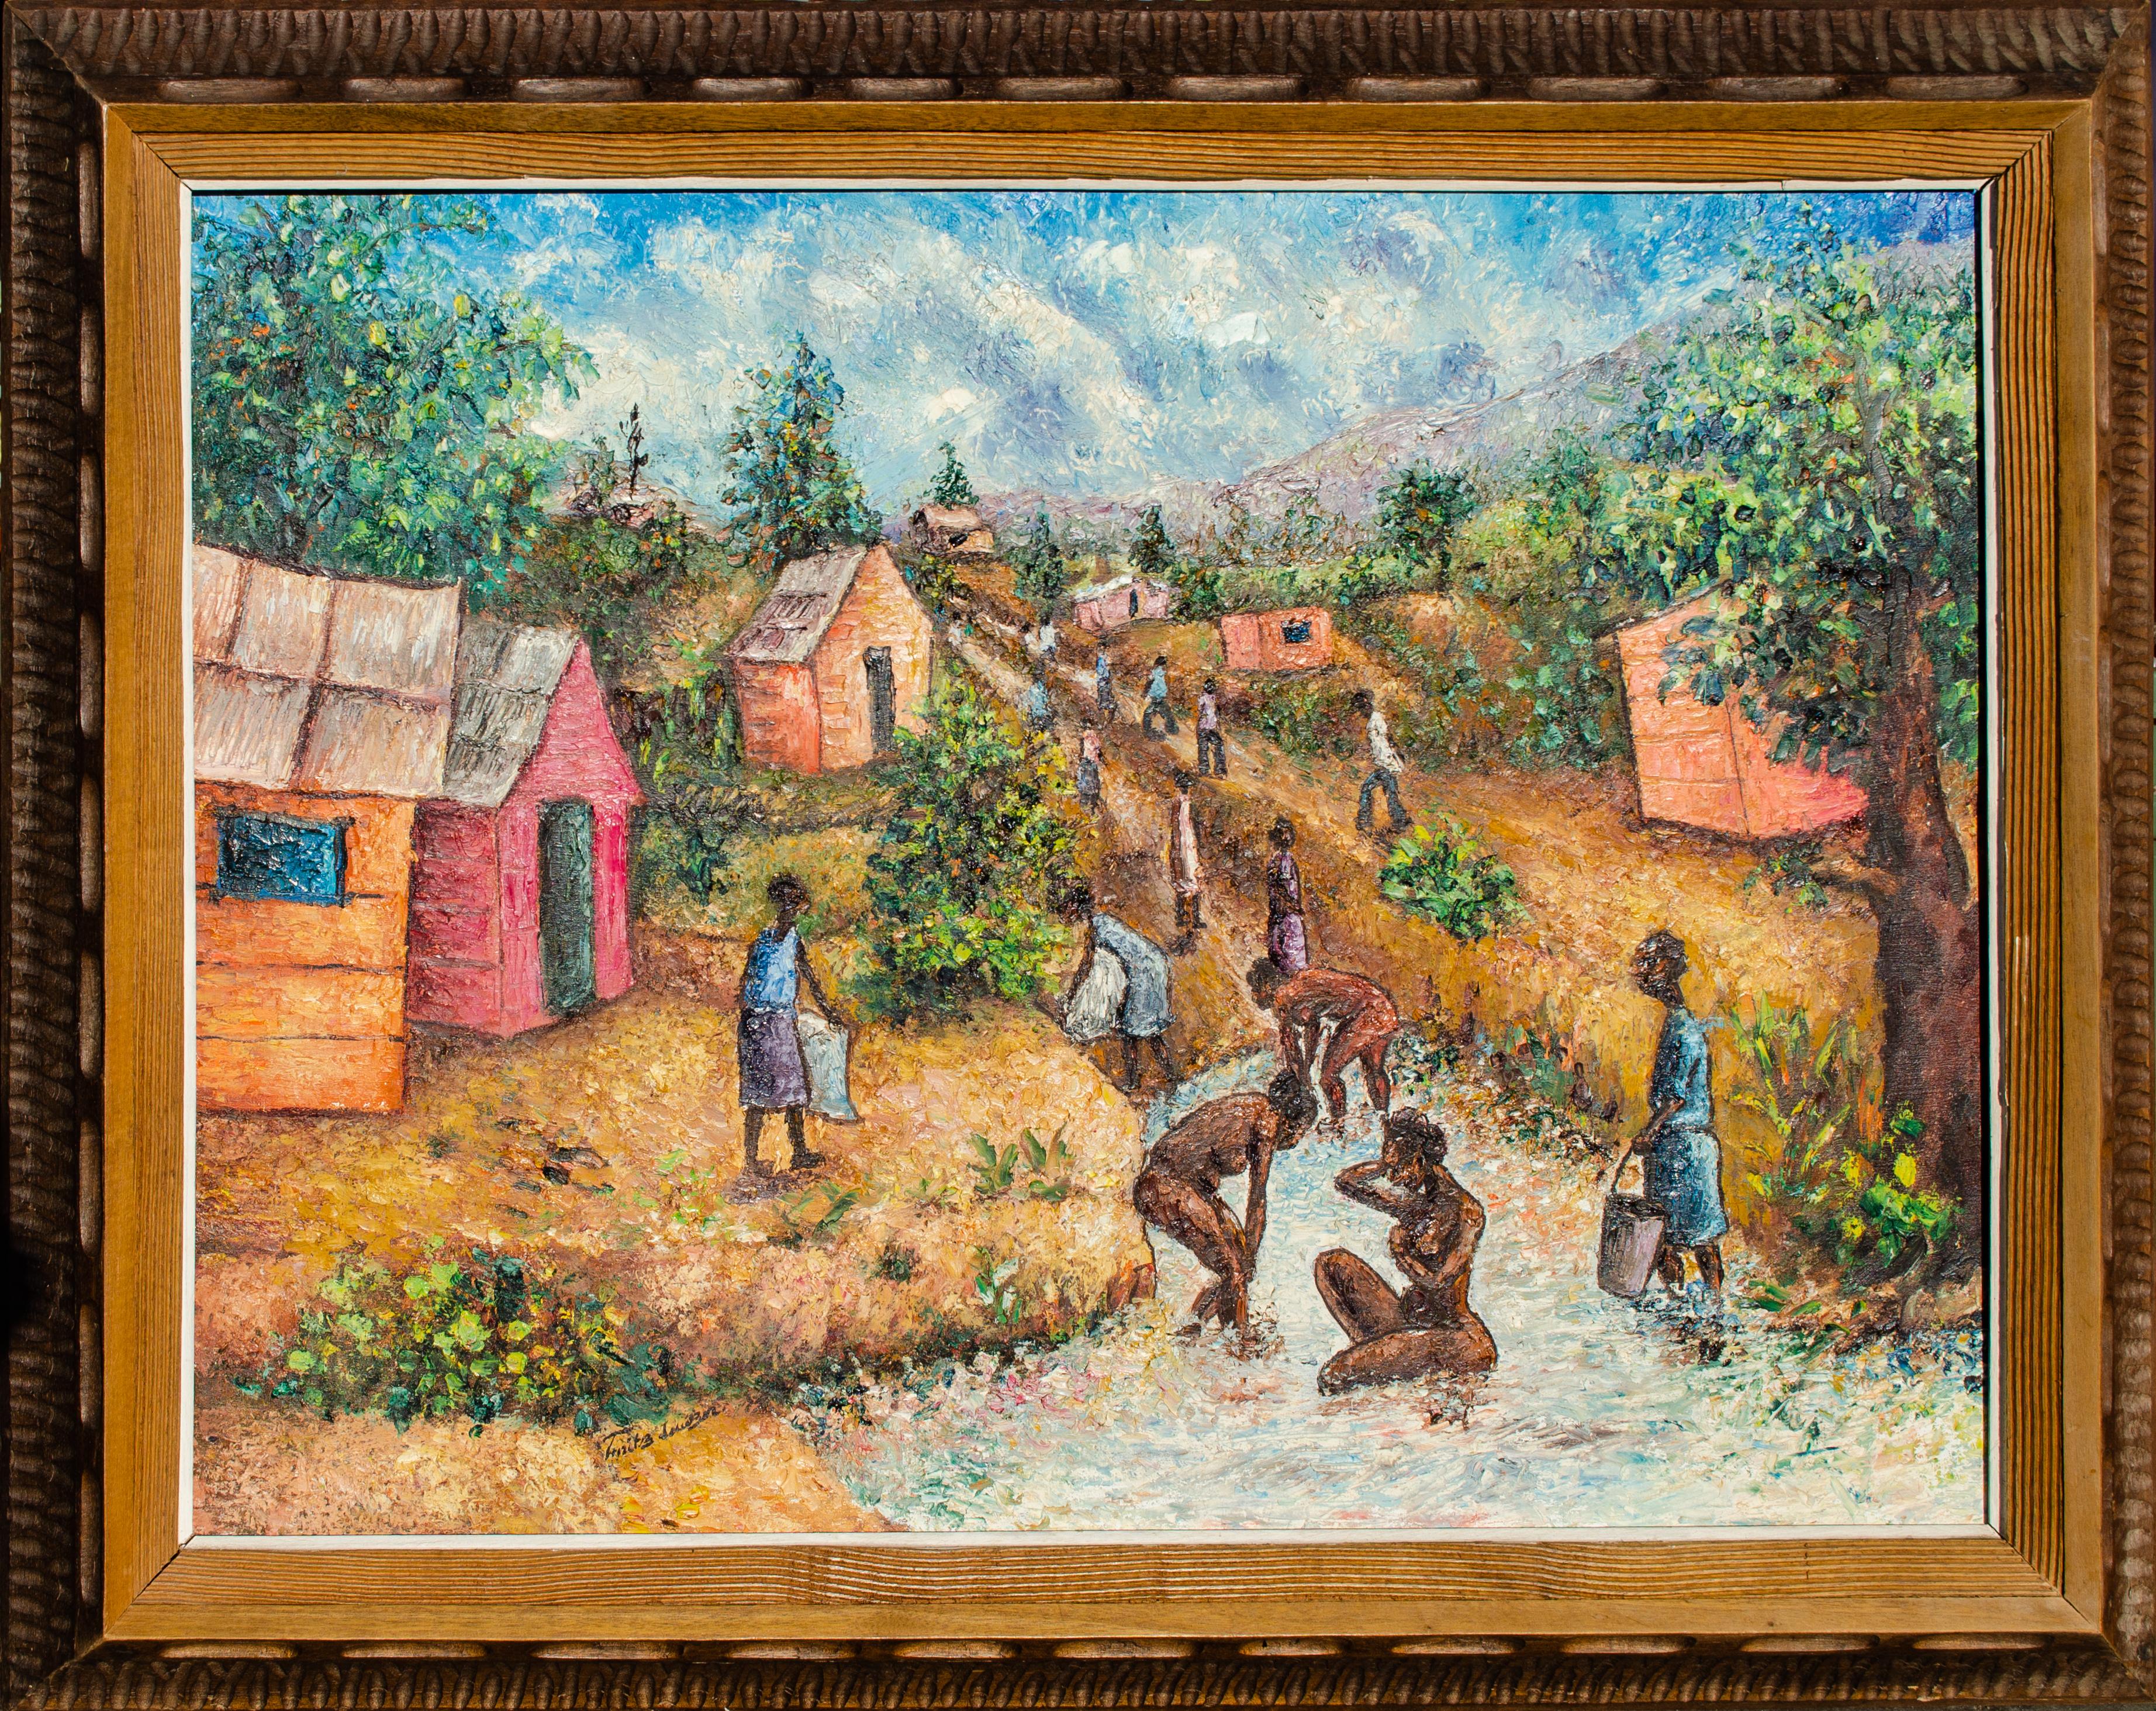 Peinture haïtienne représentant des villageoises en train de se baigner